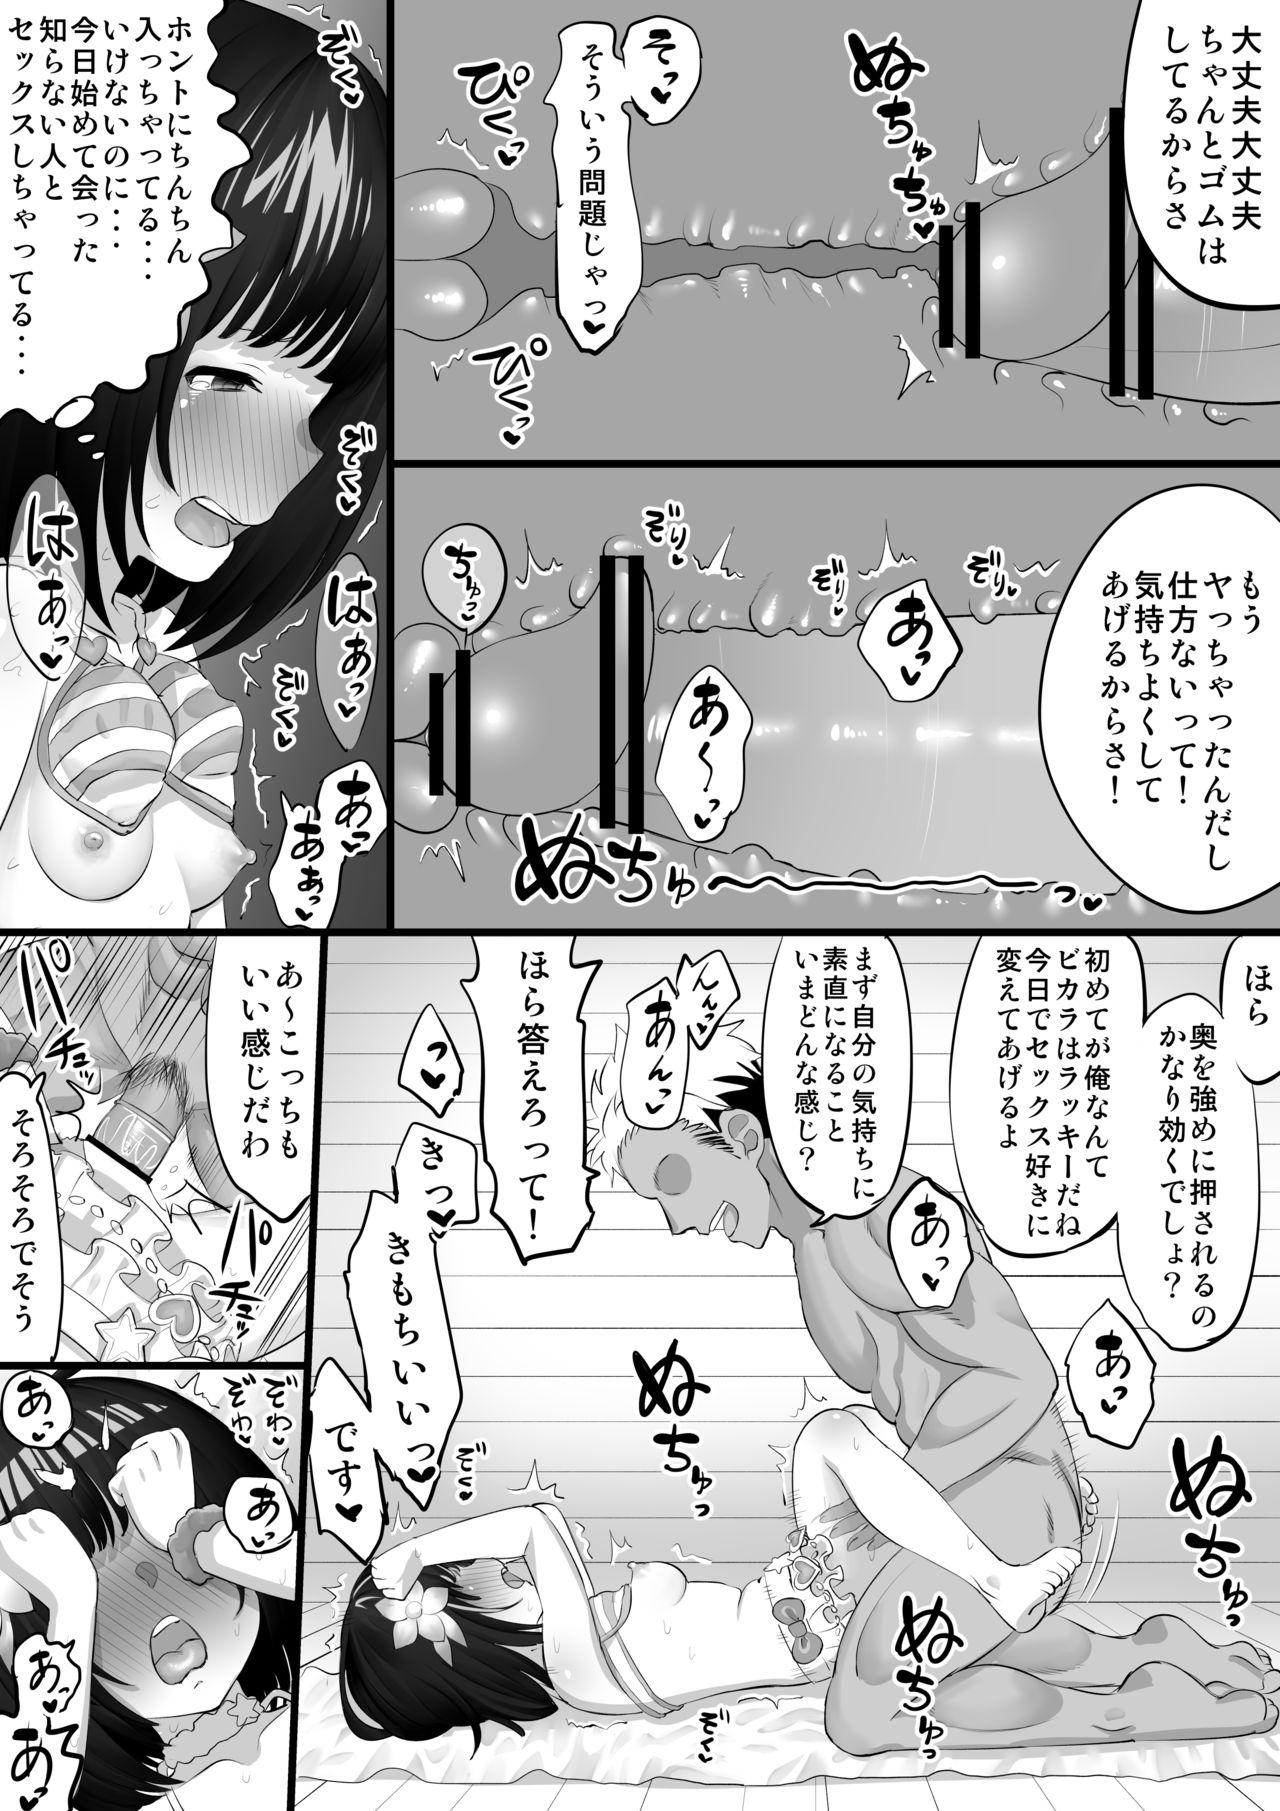 Creampies Vikala Nanpa H Manga - Granblue fantasy Tight Pussy Fucked - Page 7